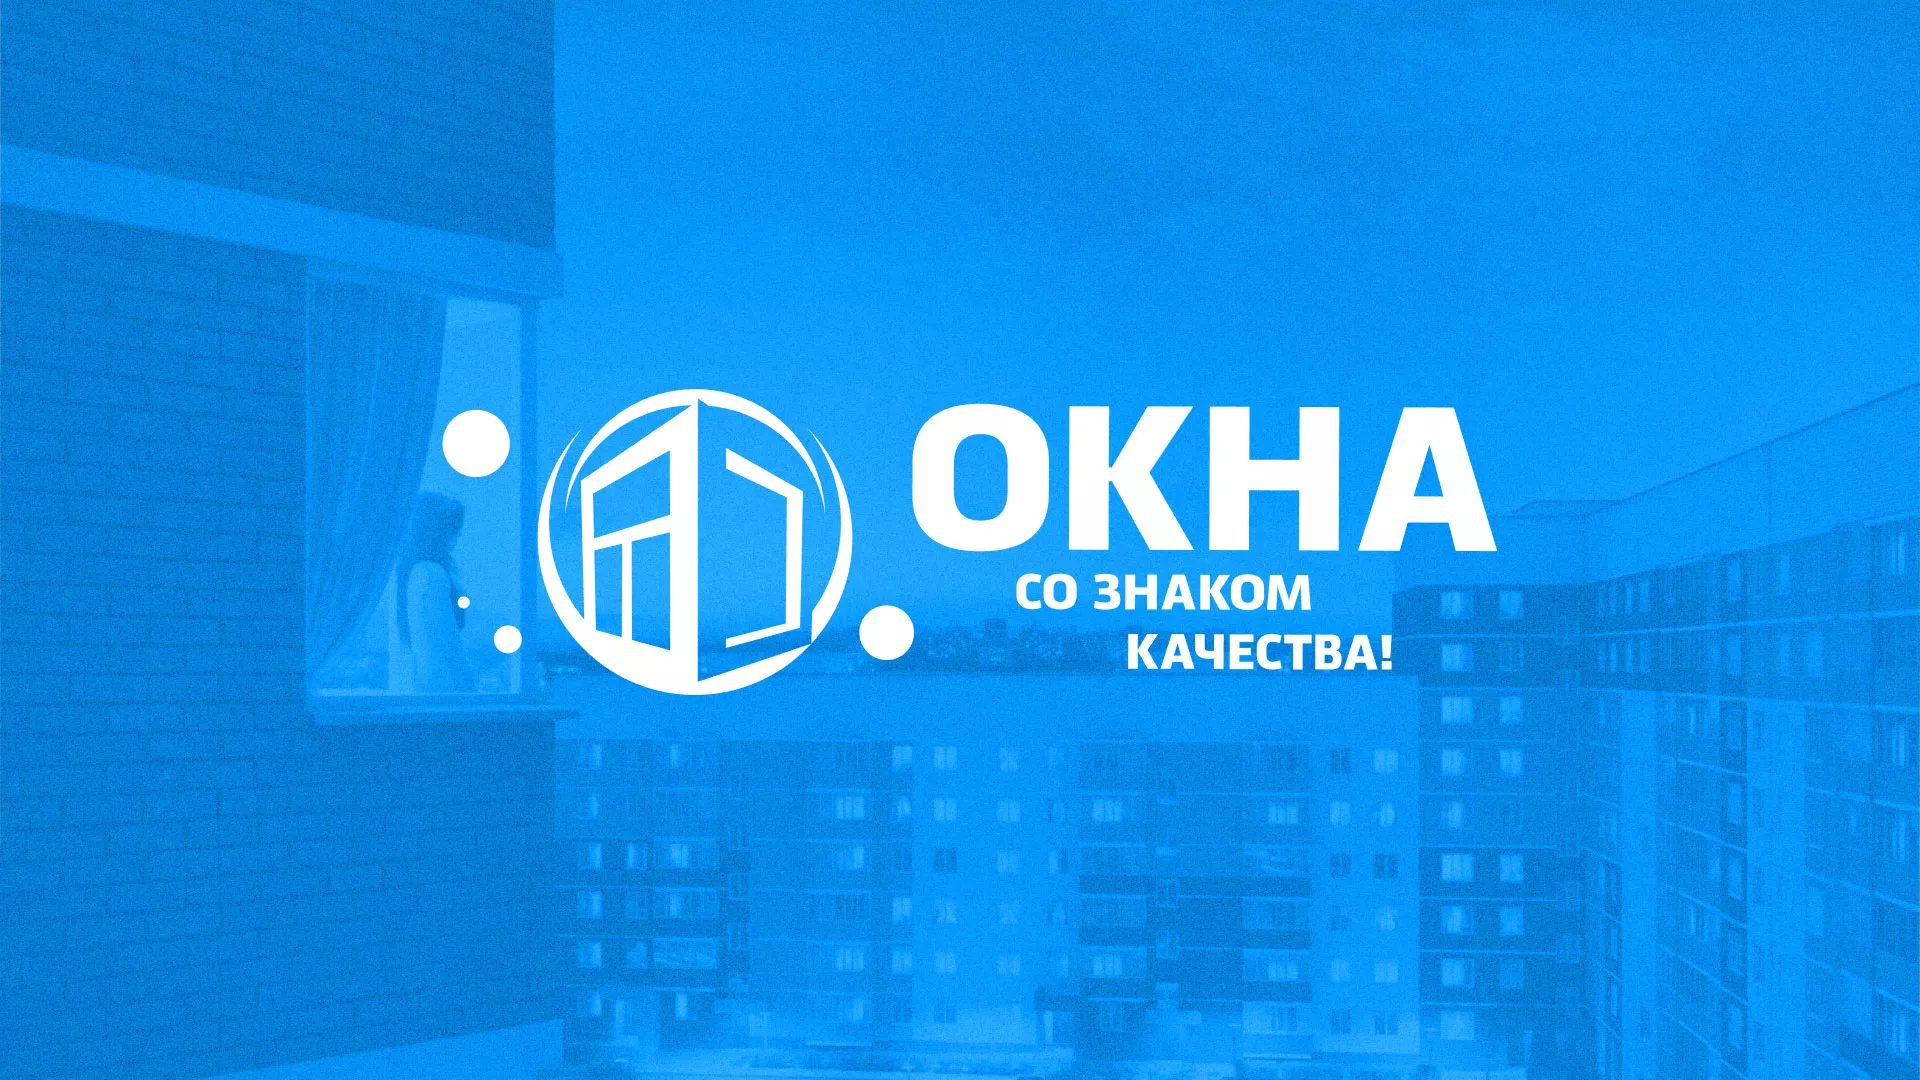 Создание сайта компании «Окна ВИДО» в Одинцово